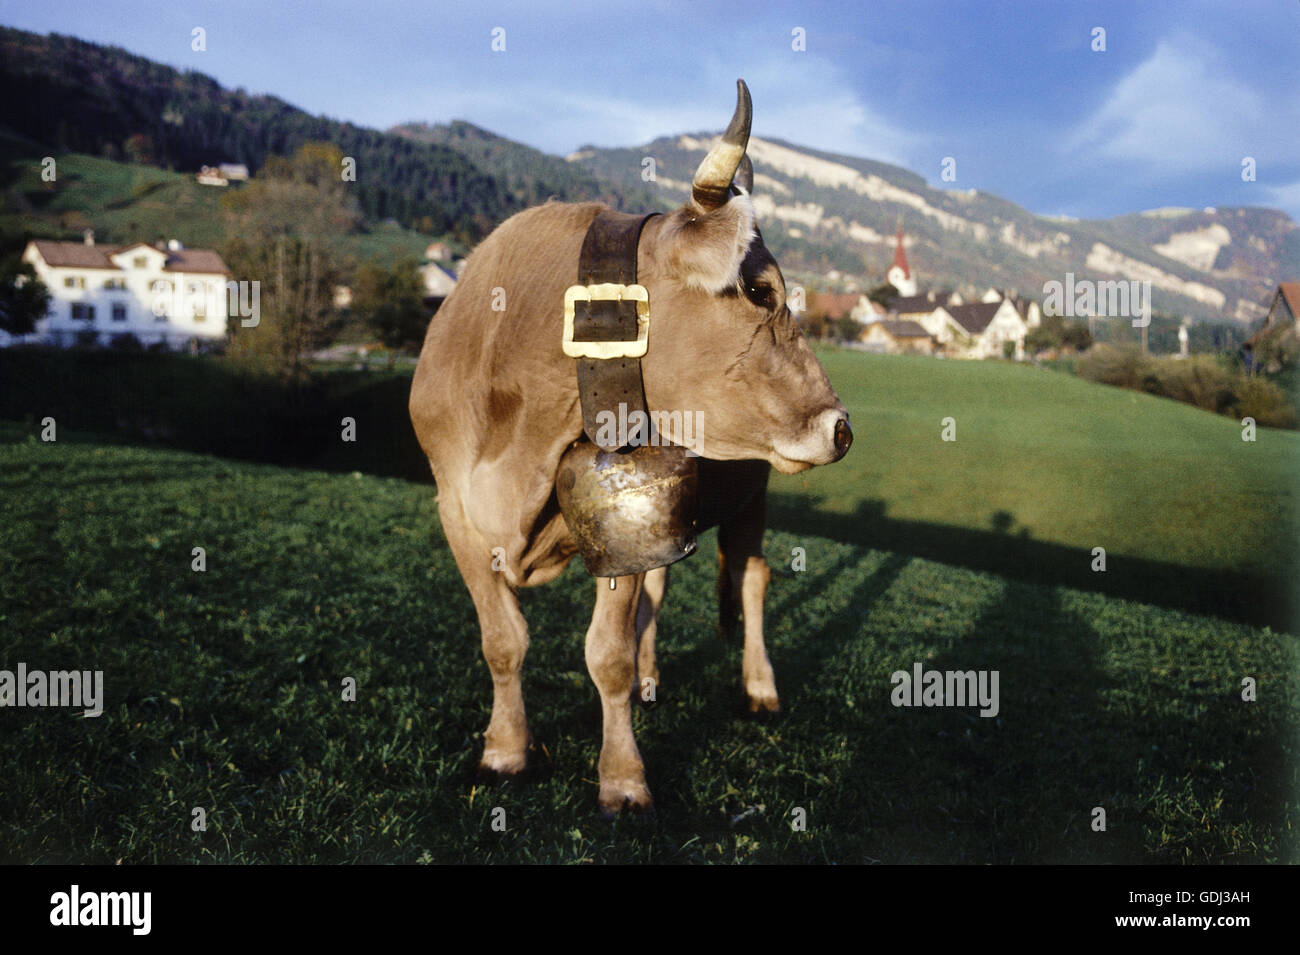 Zoologie / Tiere, Säugetier / Säugetier, Rinder (Bos), Rinder (Bos Primigenius Forma Taurus), braune Kuh mit Glocke auf Alpenwiese, Schweiz, Vertrieb: weltweit, Stockfoto